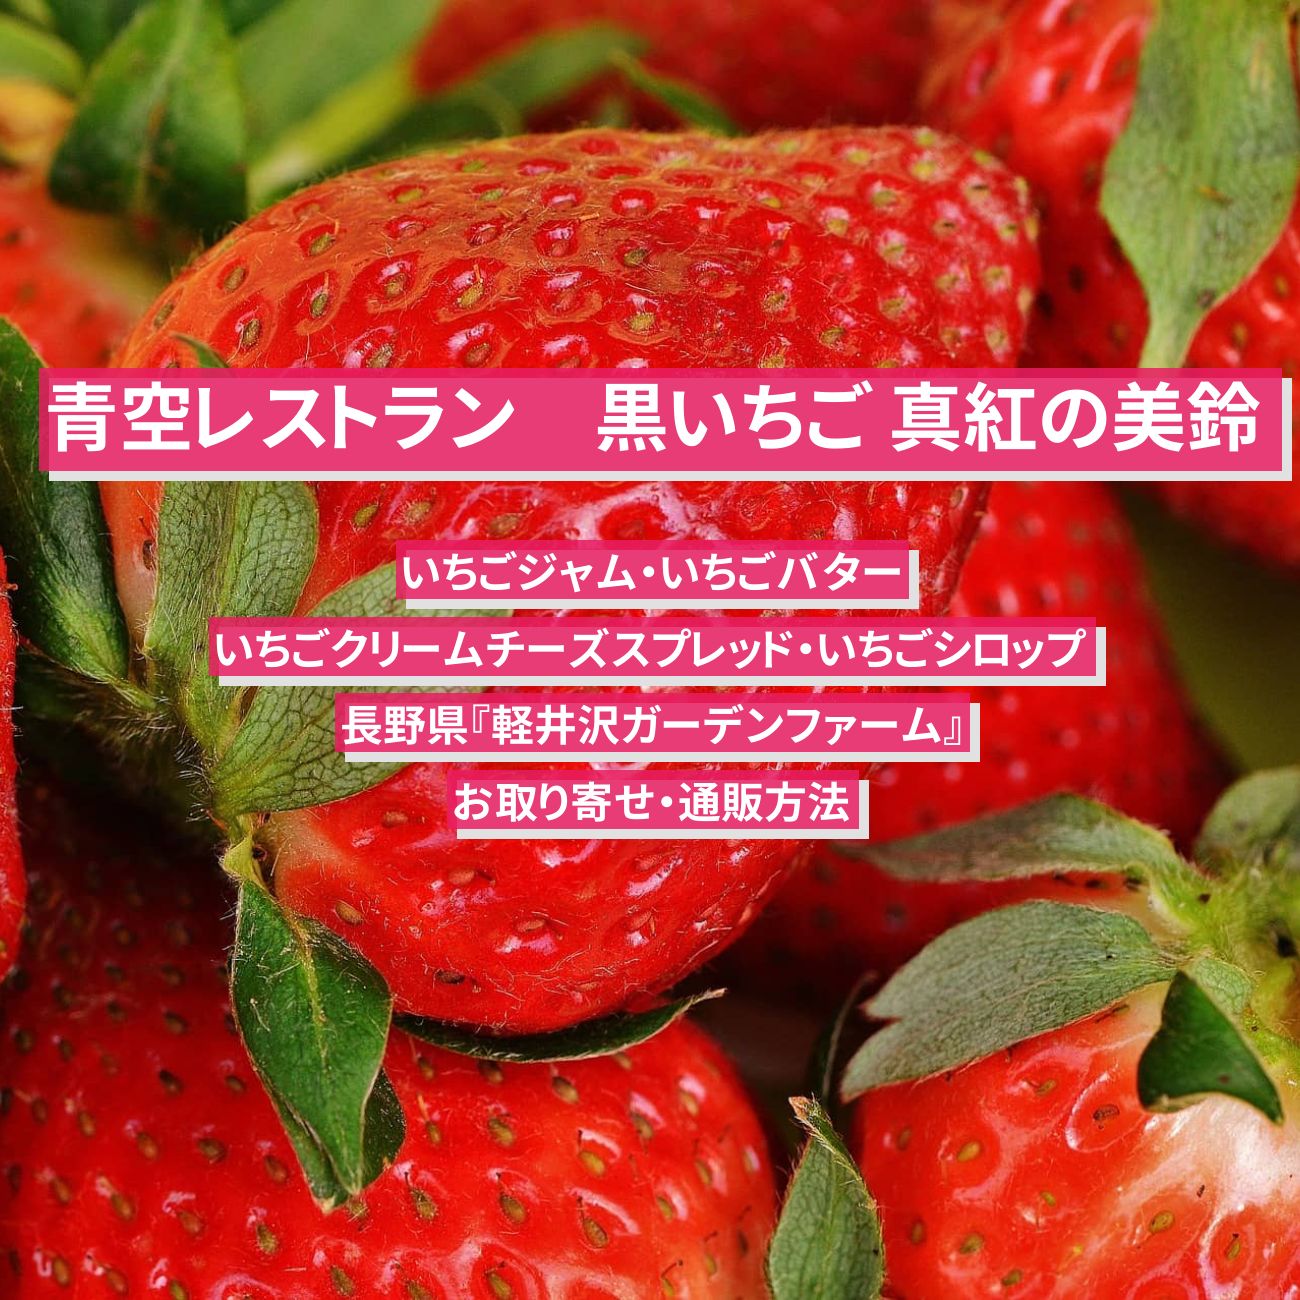 【青空レストラン】いちごジャム・いちごバター『軽井沢ガーデンファーム』長野県のお取り寄せ・通販方法